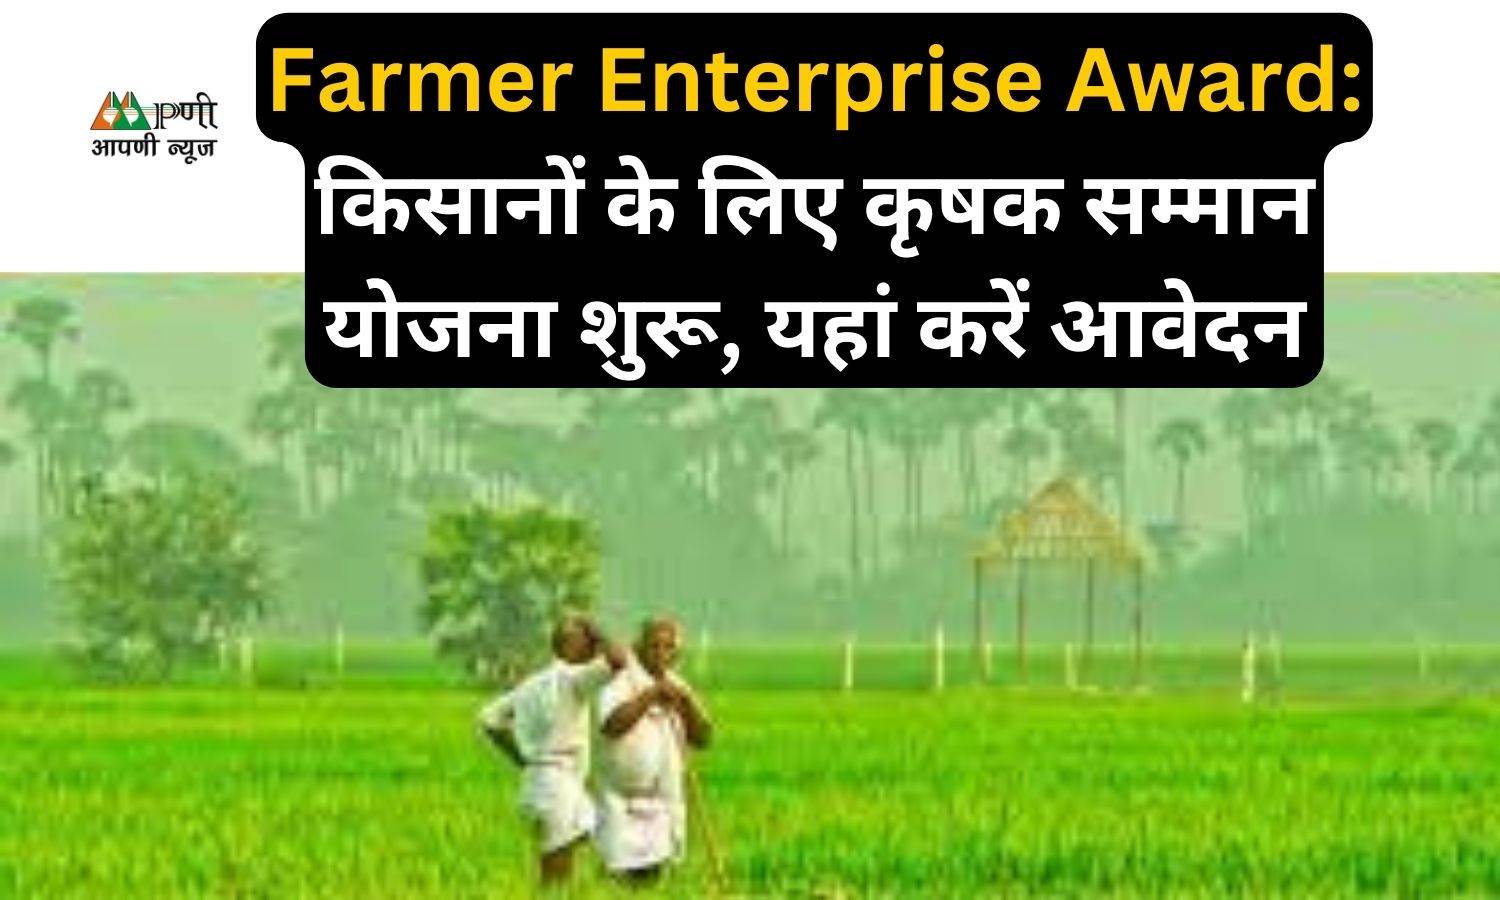 Farmer Enterprise Award: किसानों के लिए कृषक सम्मान योजना शुरू, यहां करें आवेदन